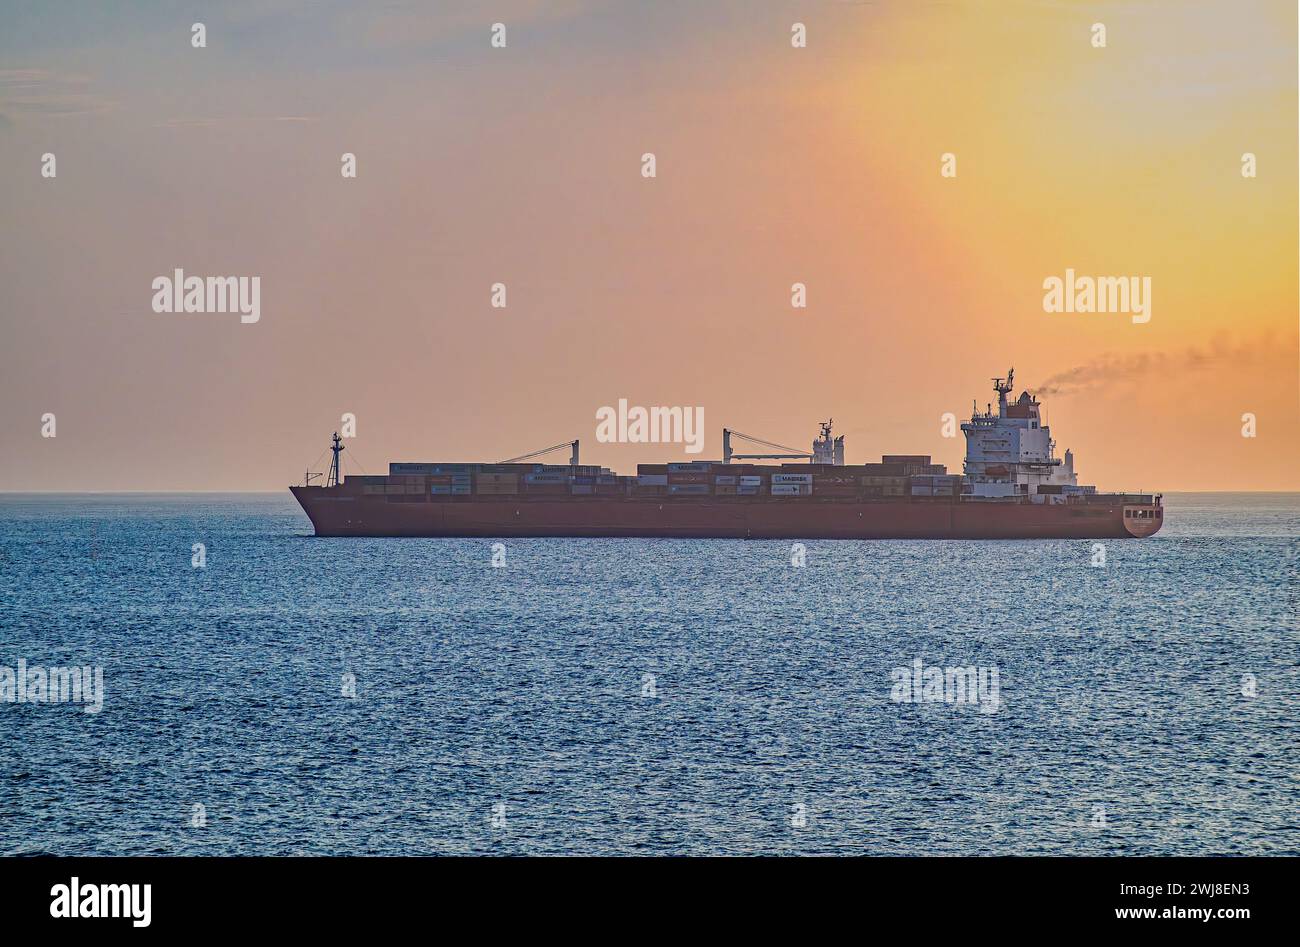 Canal de Panama, Panama - 24 juillet 2023 : grand navire porte-conteneurs, coque rouge, grande charge, en attente sur l'océan Pacifique dans la lumière du lever du soleil du matin sur l'eau bleue Banque D'Images